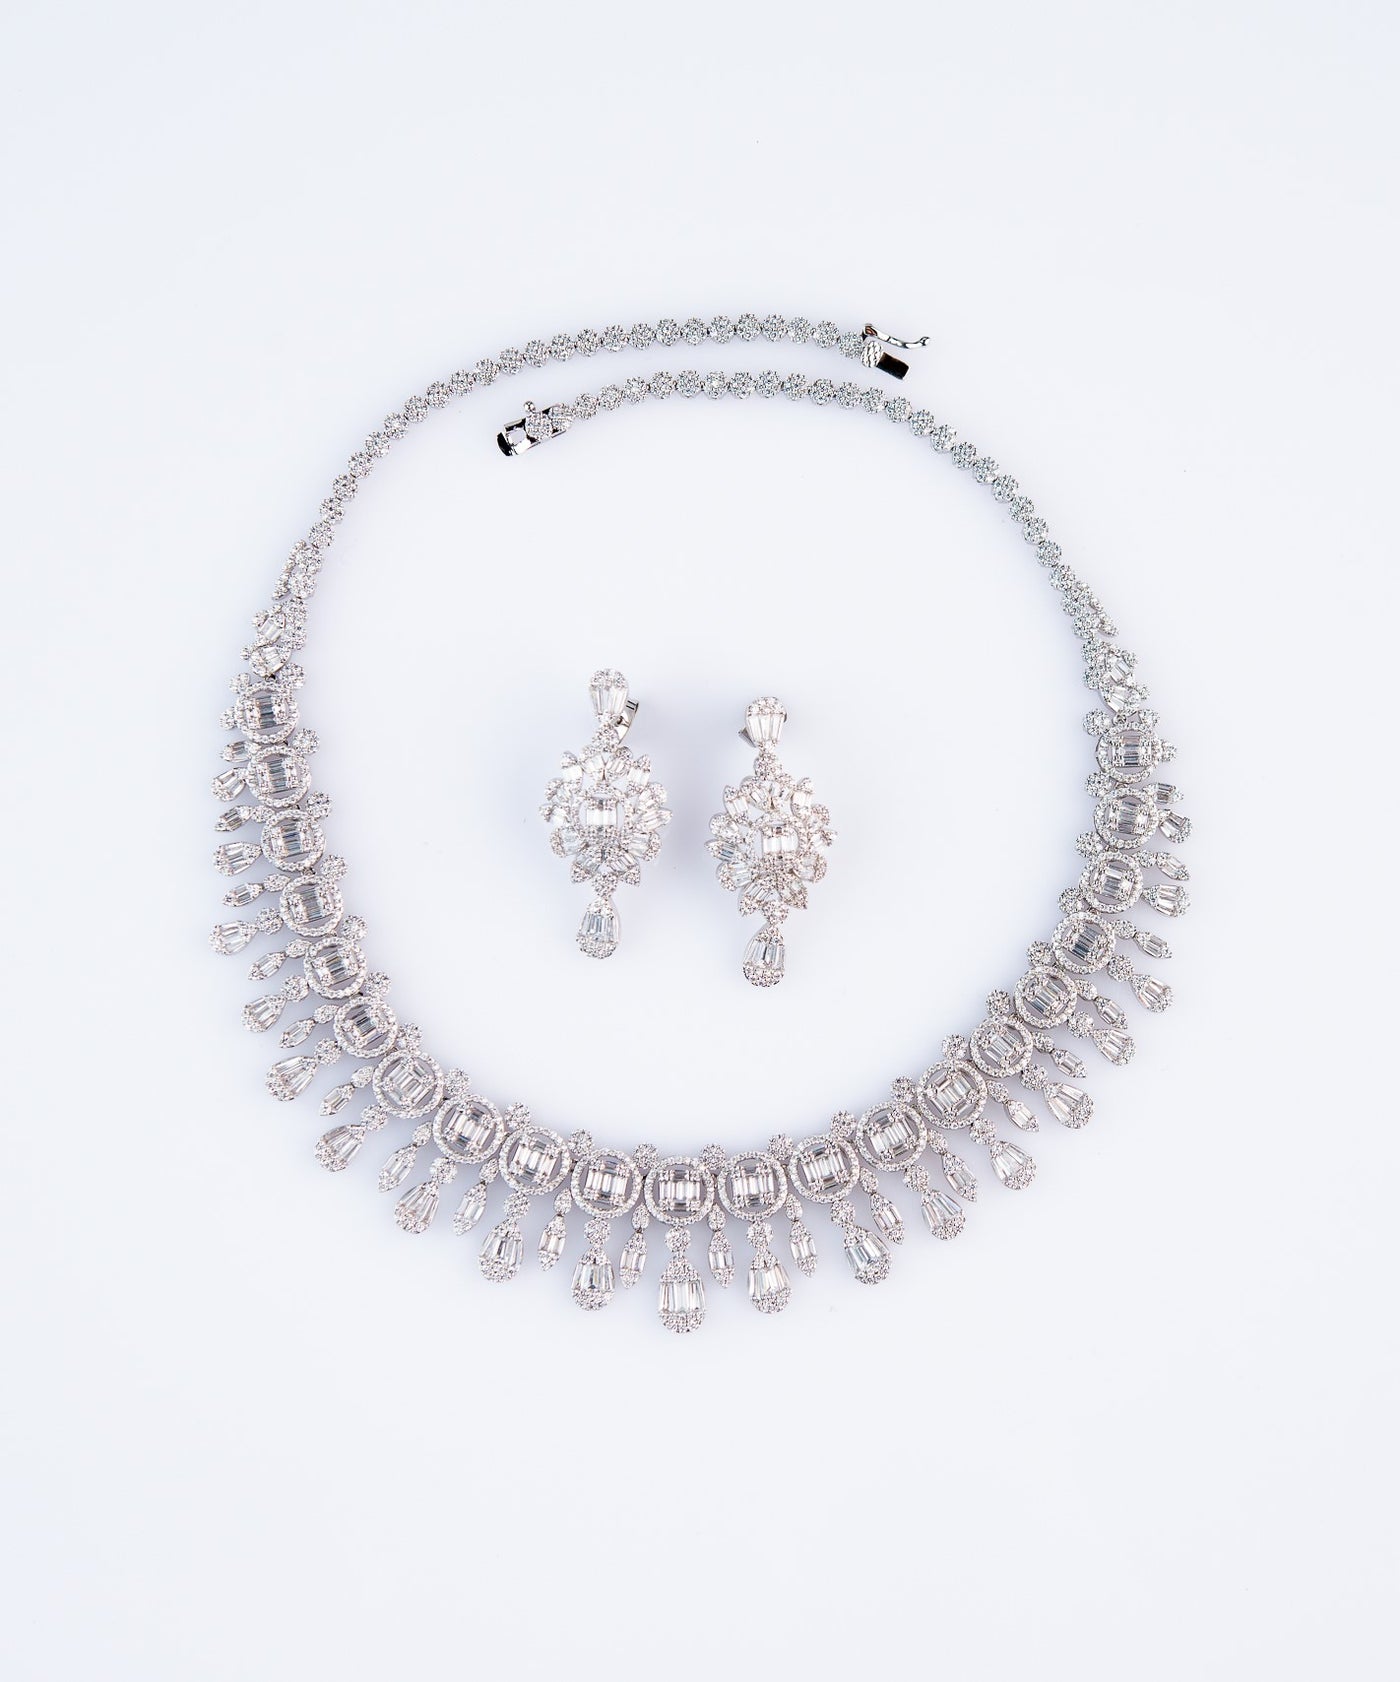 Snow White Diamonte necklace set